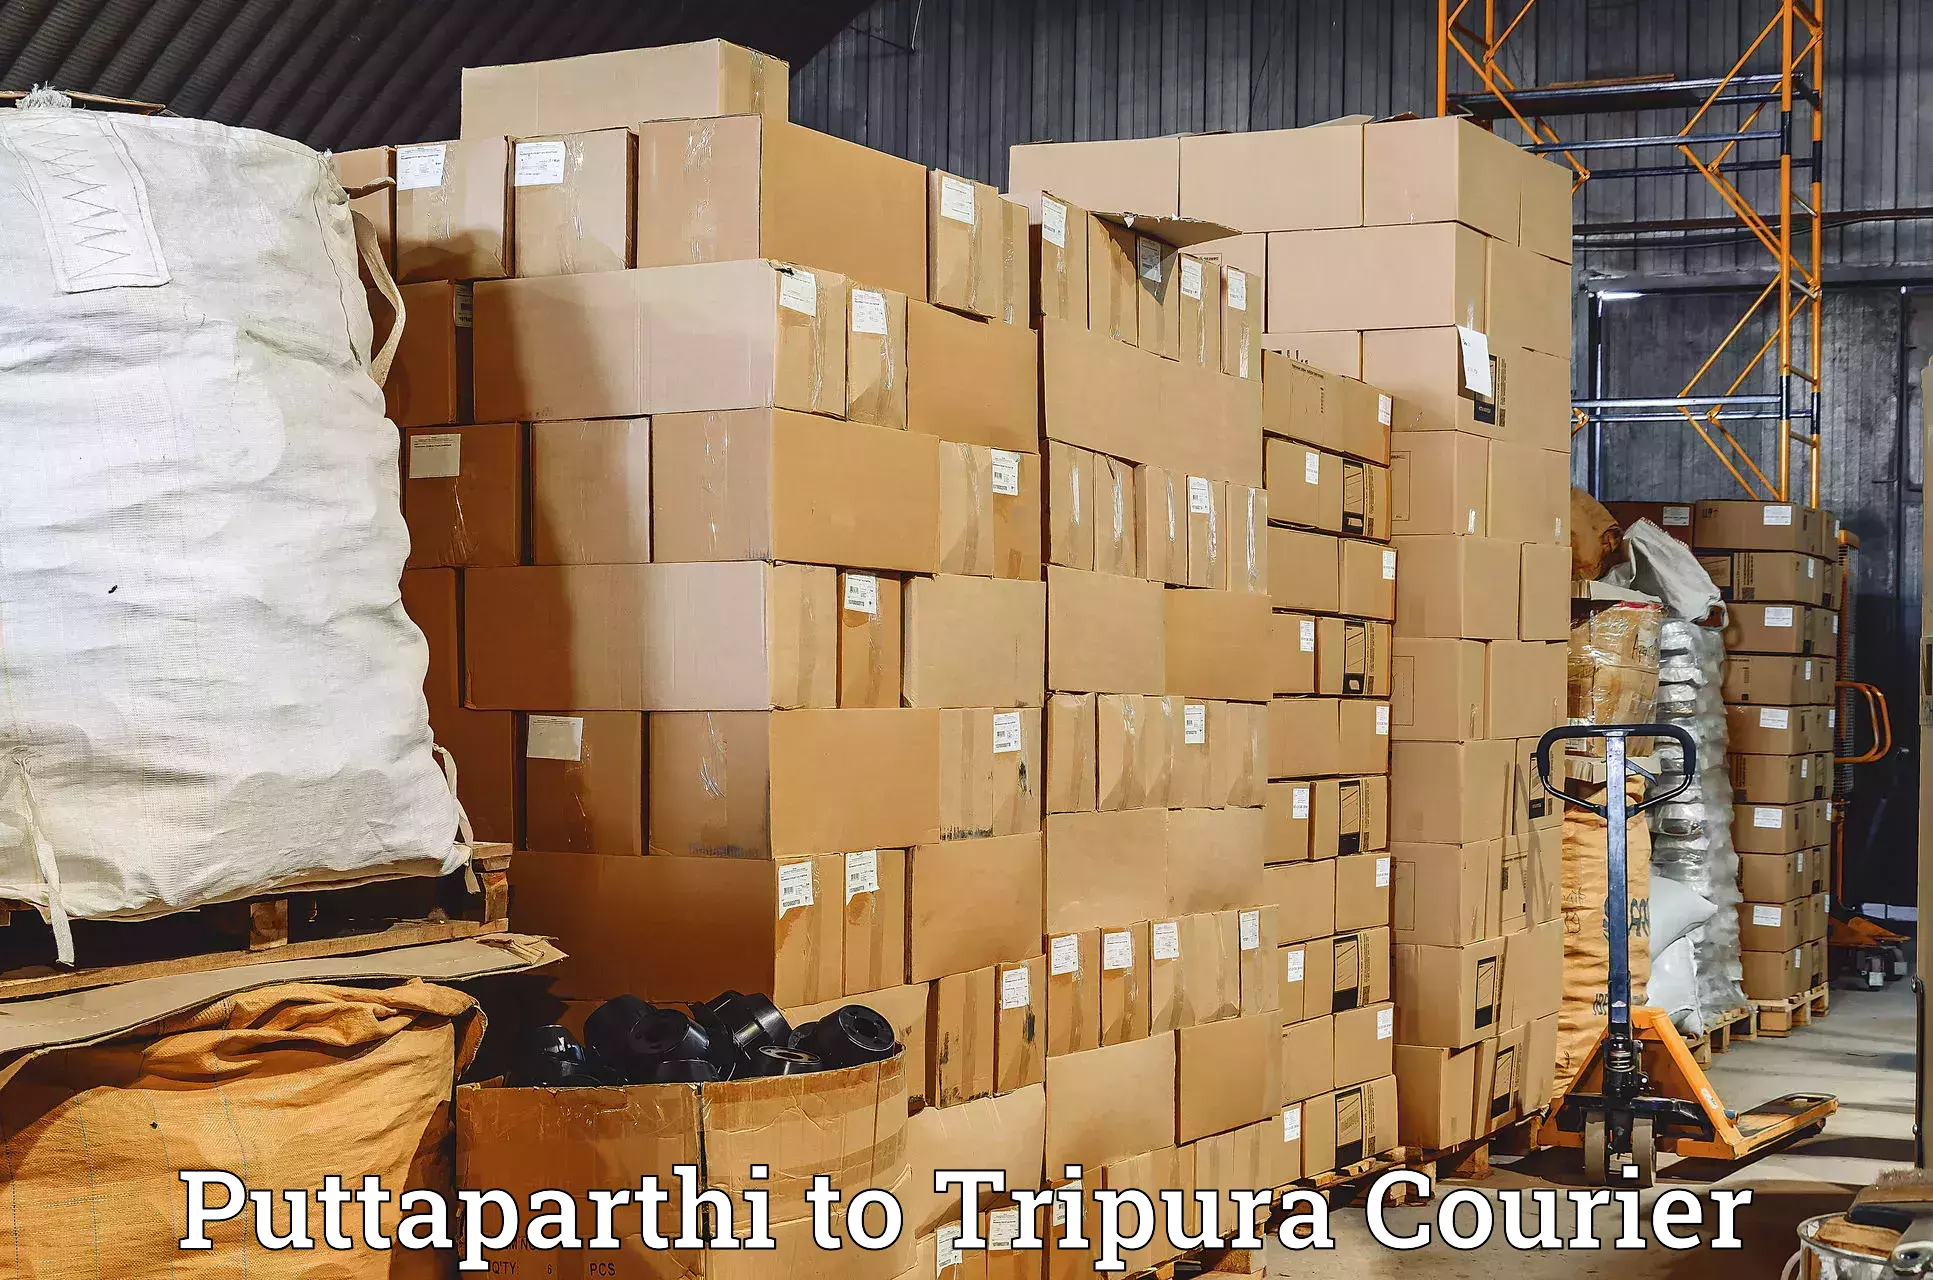 Customer-focused courier Puttaparthi to Sonamura